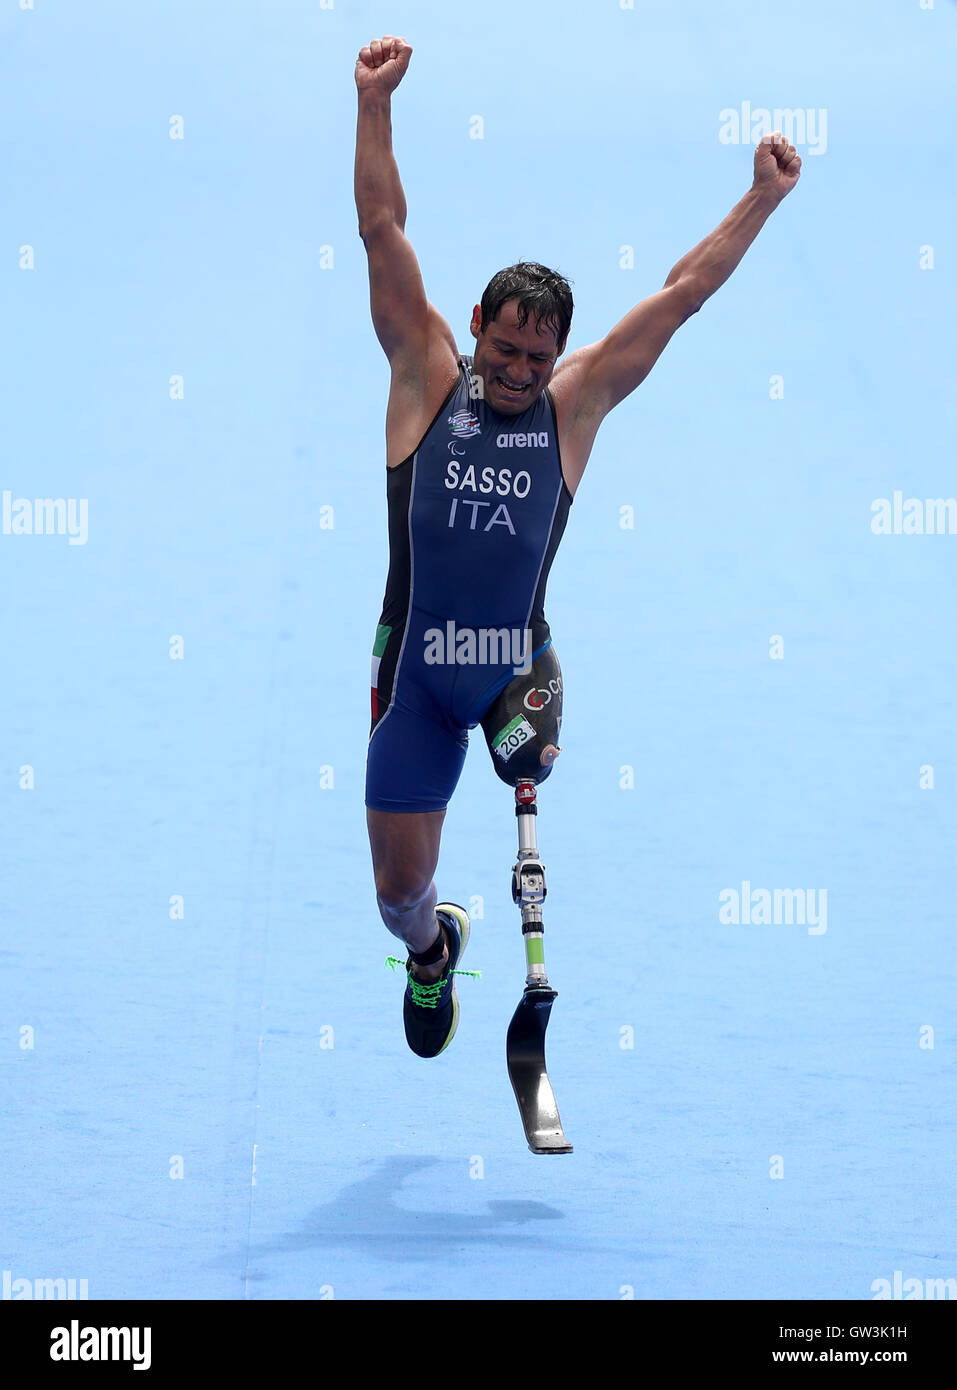 Italiens Giovanni Sasso feiert als er die Linie im 9. in der Männer Triathlon PT2 während des dritten Tages der Rio Paralympischen Spiele 2016 in Rio De Janeiro, Brasilien überquert. Stockfoto